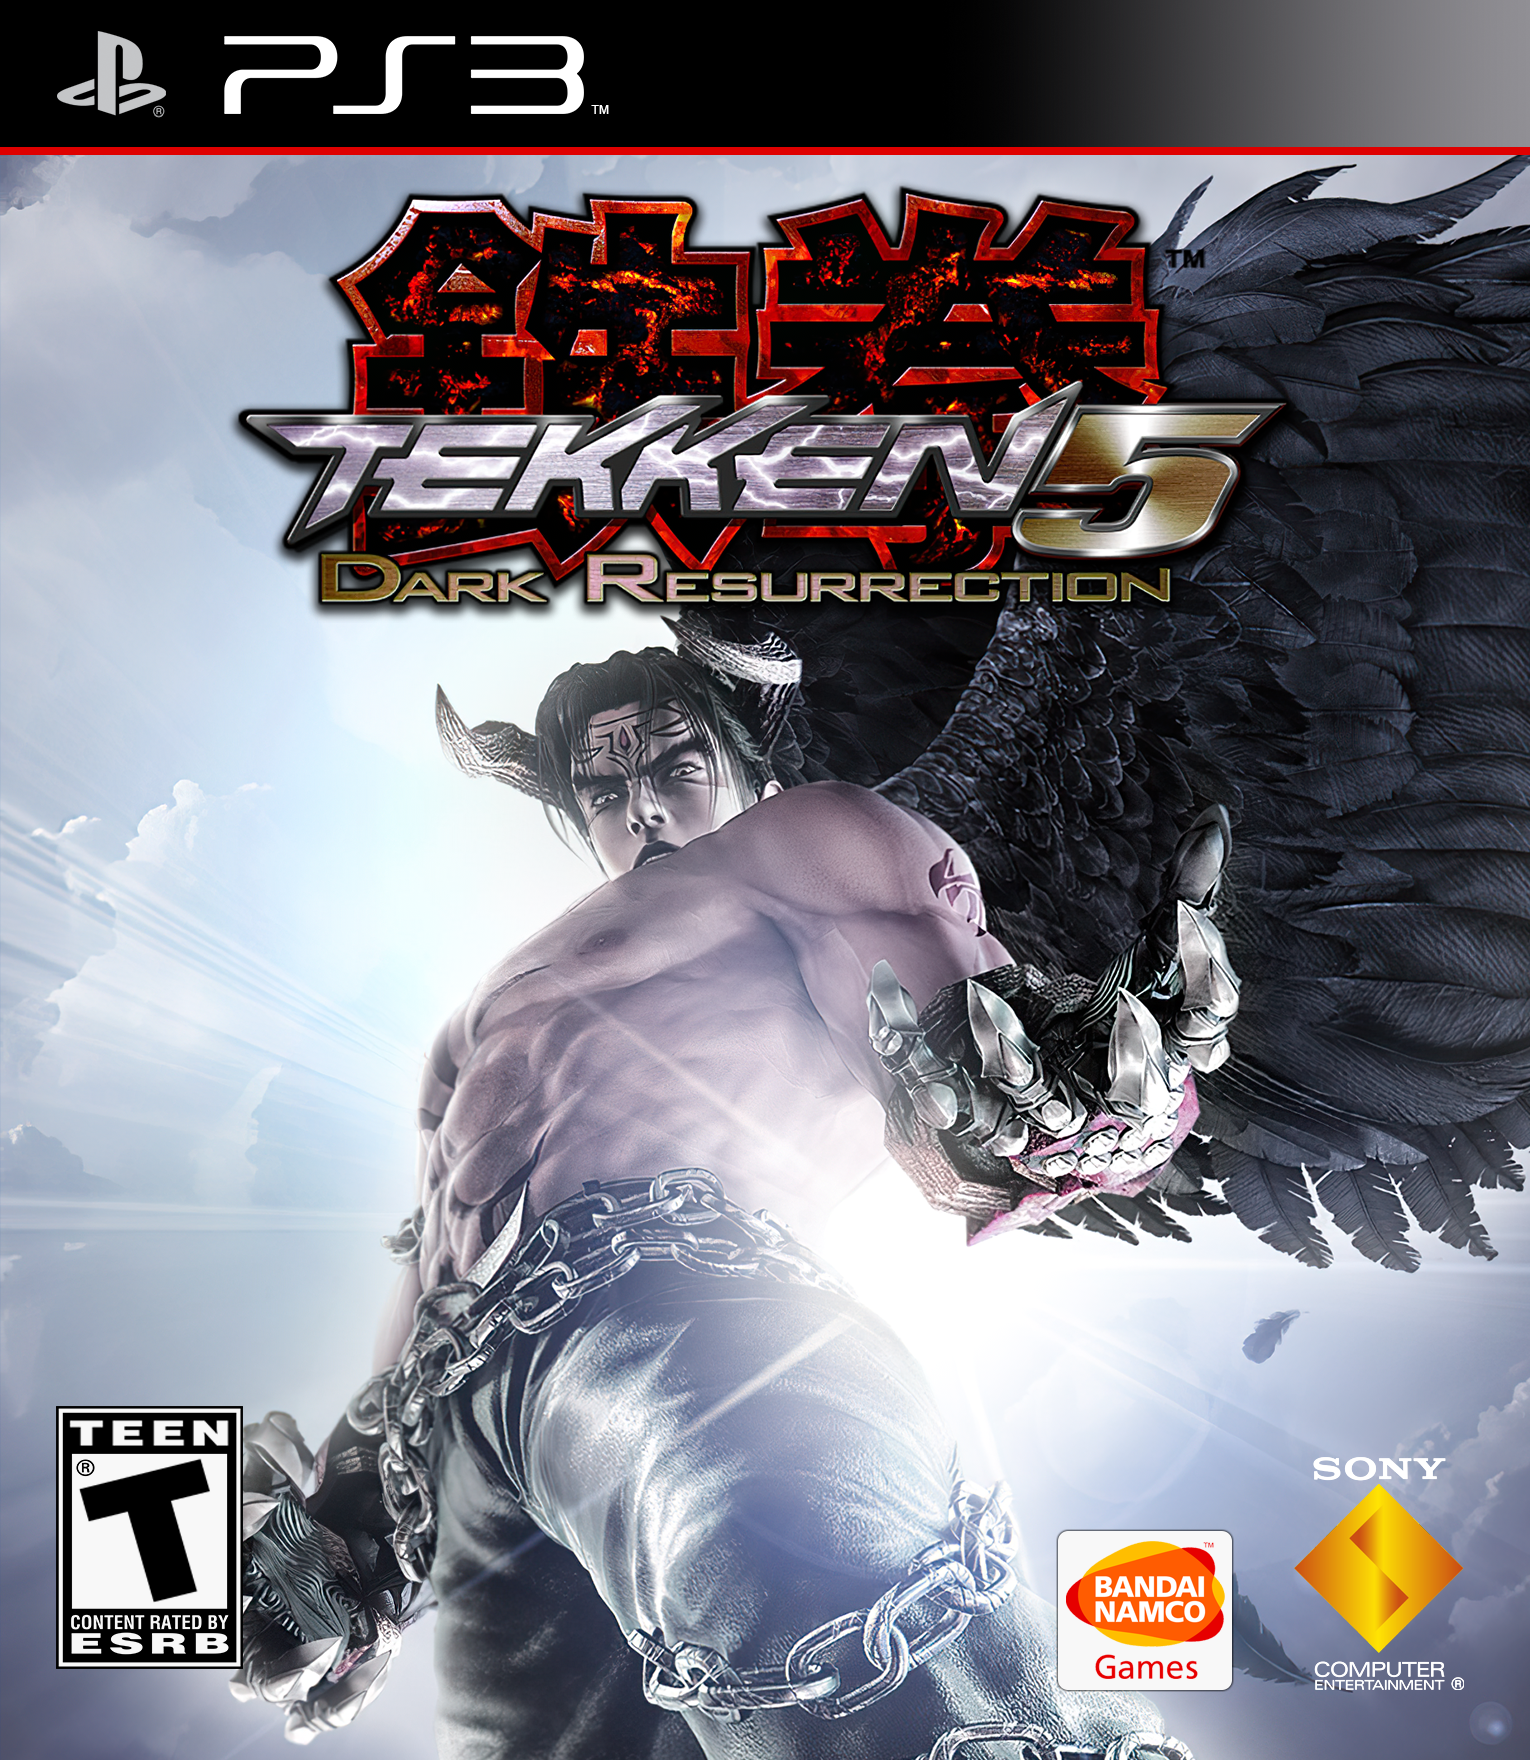 Tekken 5: Dark Resurrection Wallpapers